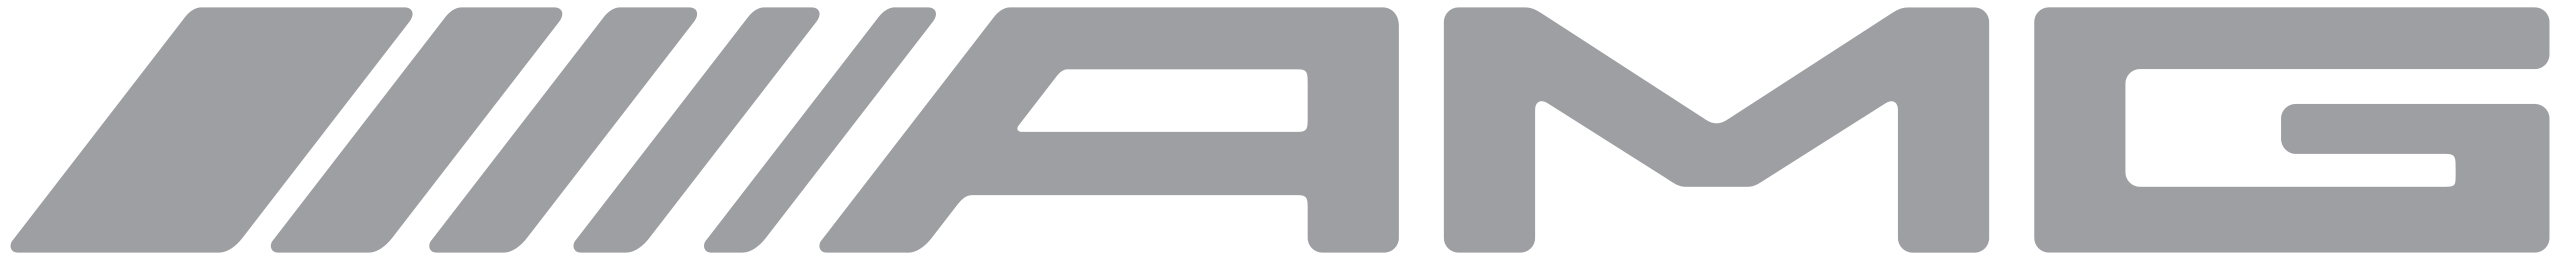 Mercedes-AMG_logo_(grey).svg